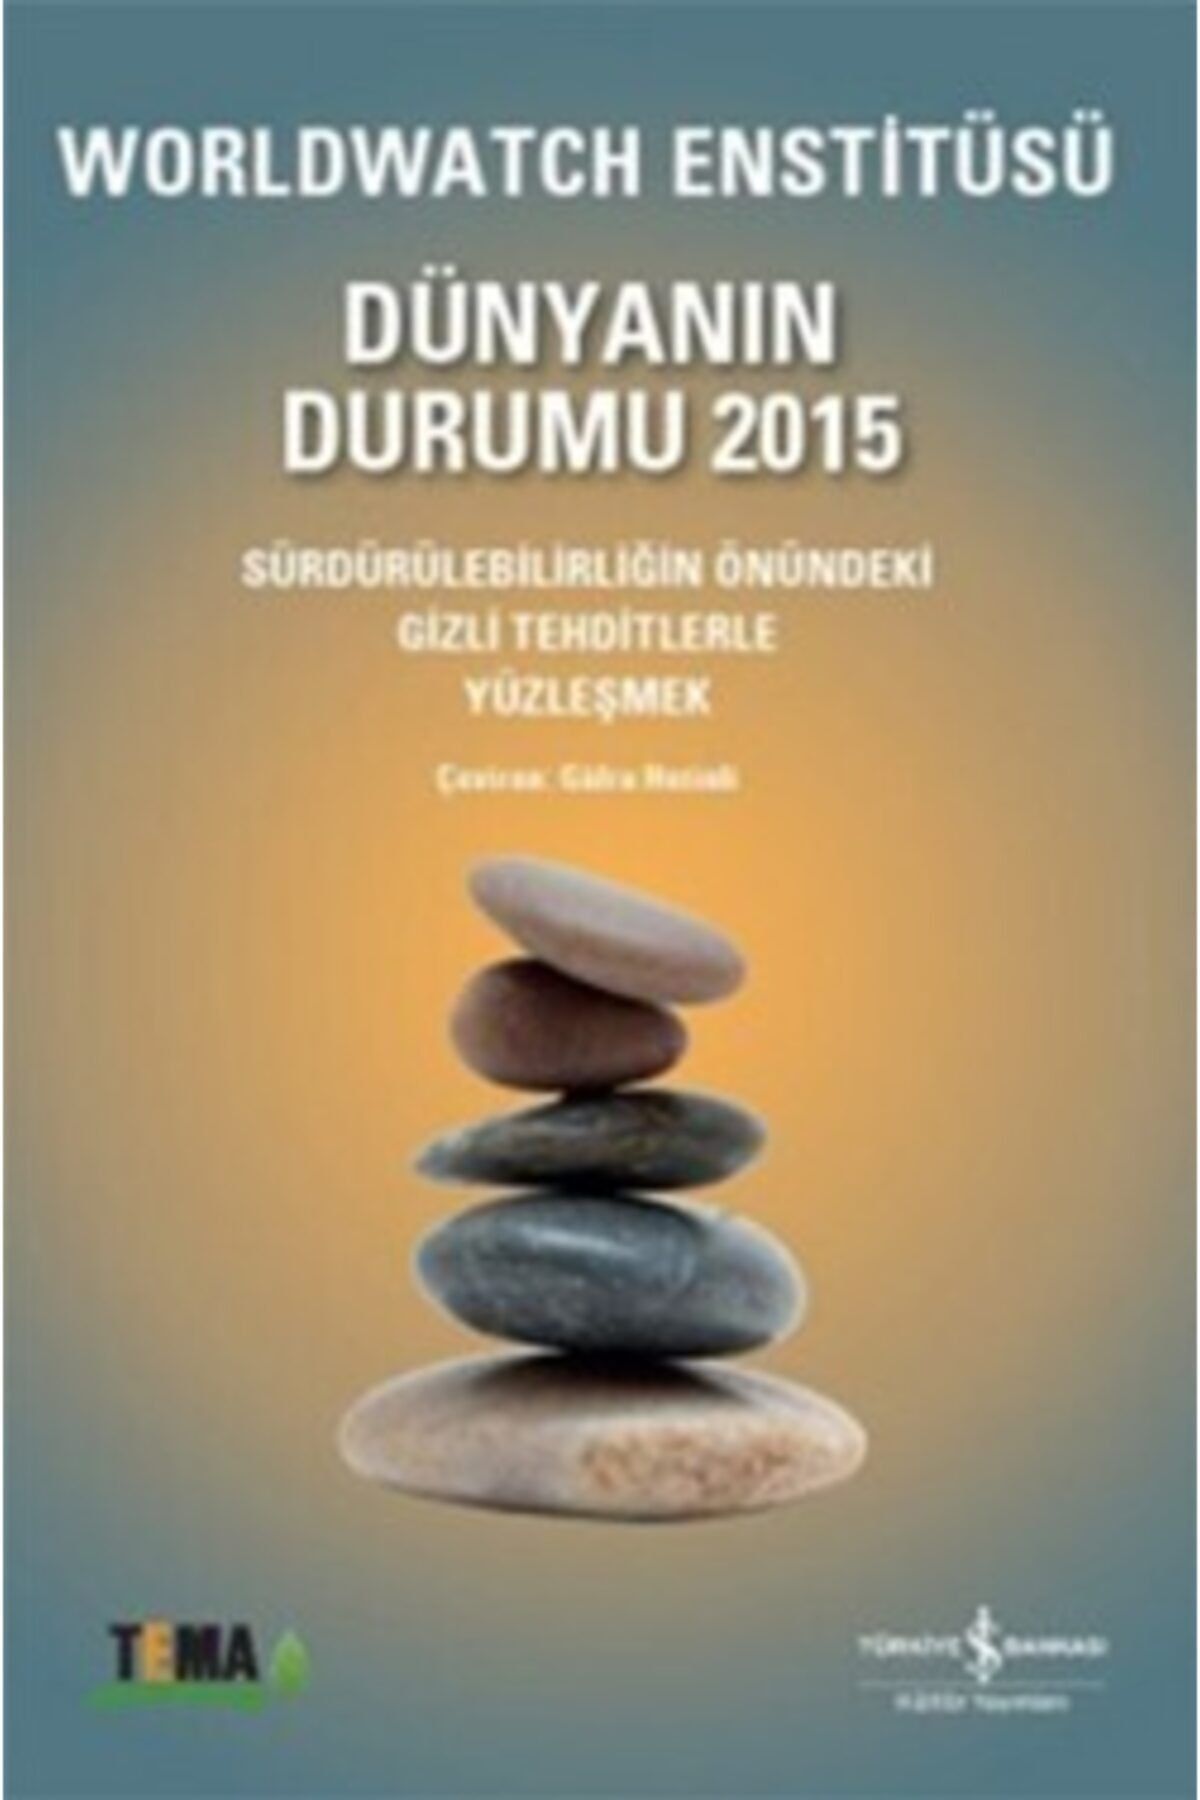 Türkiye İş Bankası Kültür Yayınları Dünyanın Durumu 2015 & Worldwatch Enstitüsü